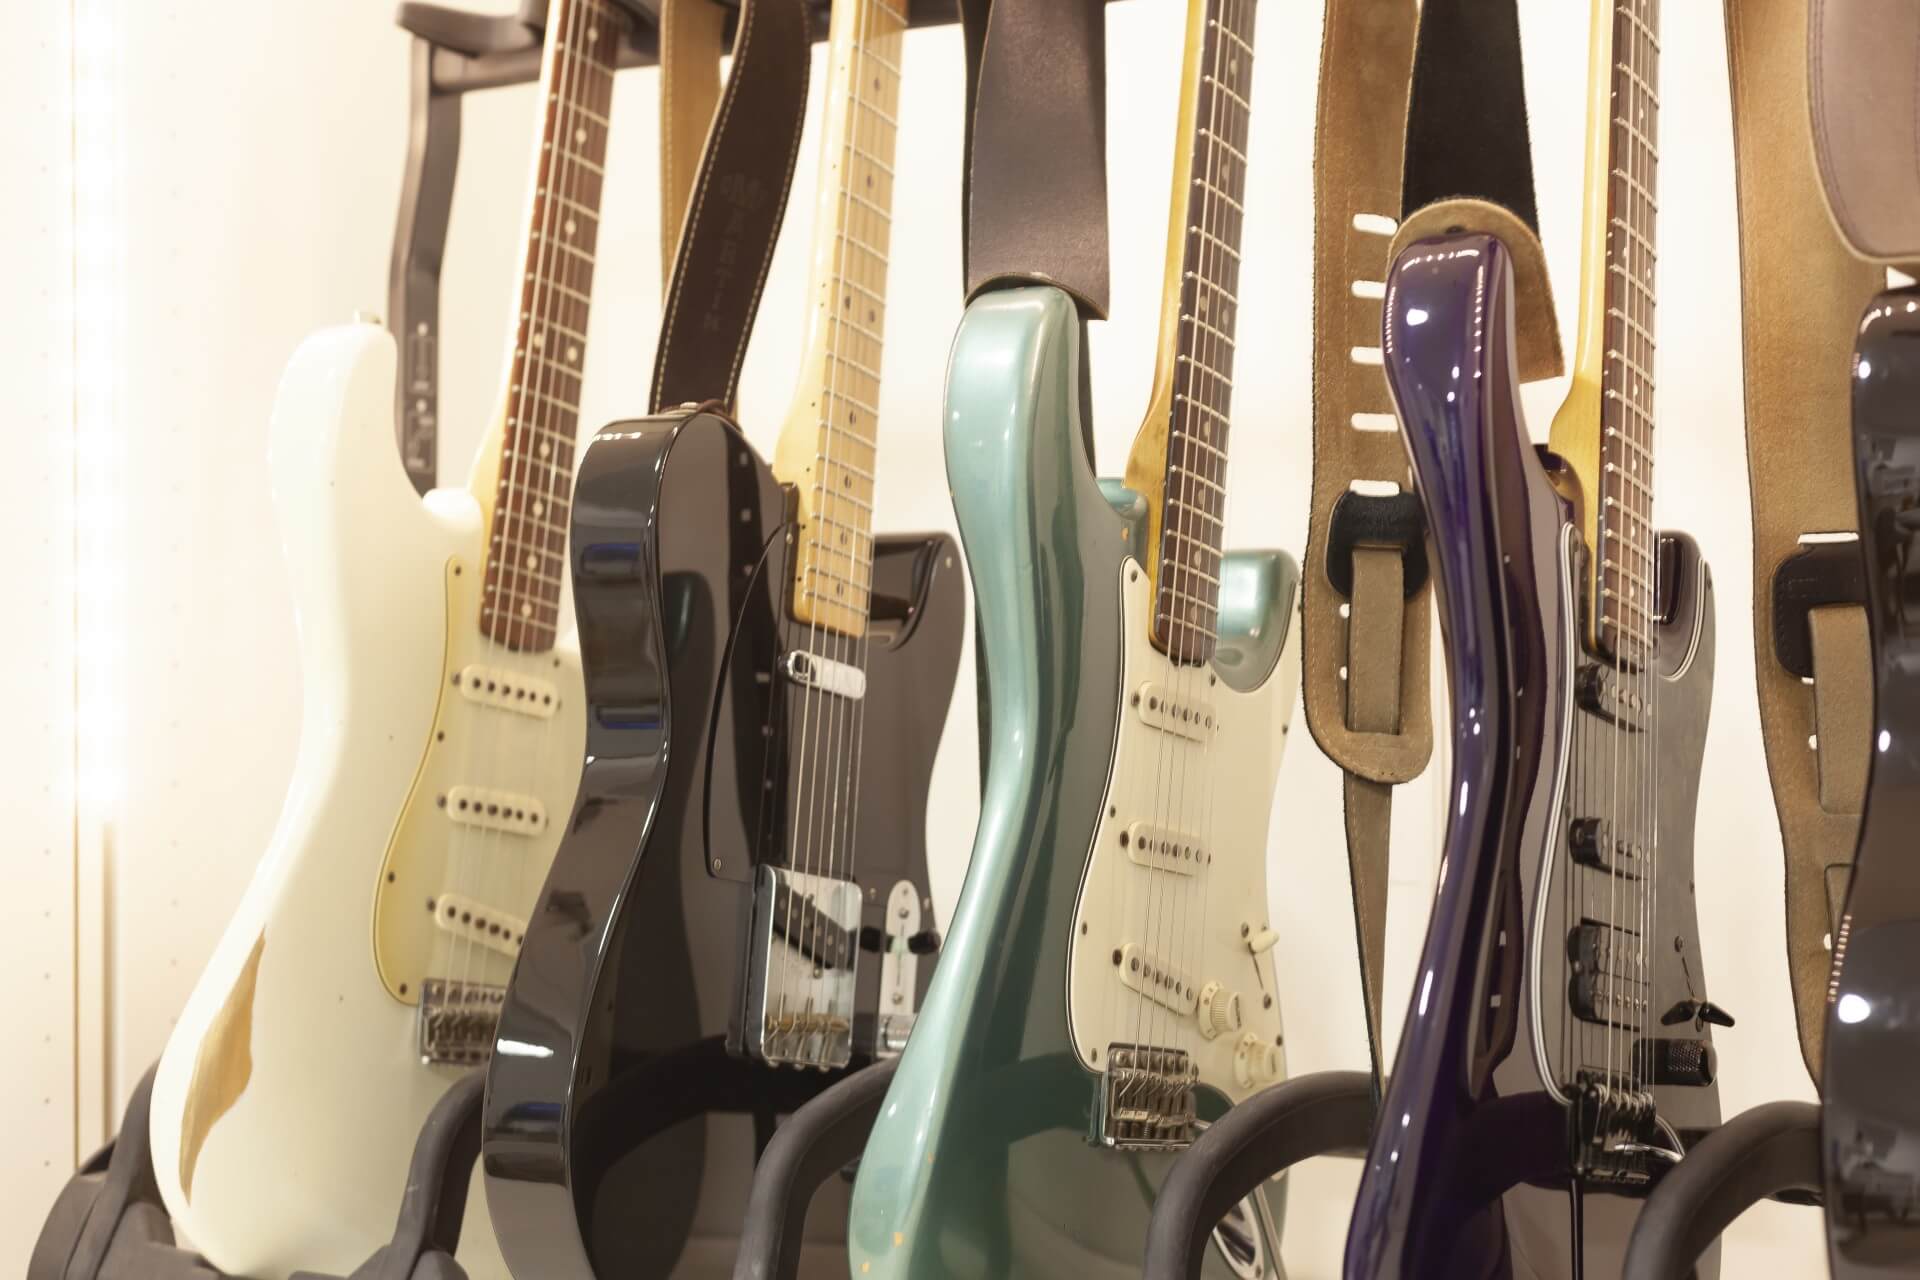 Korpusse verschiedener Stratocaster und Telecaster Modelle.